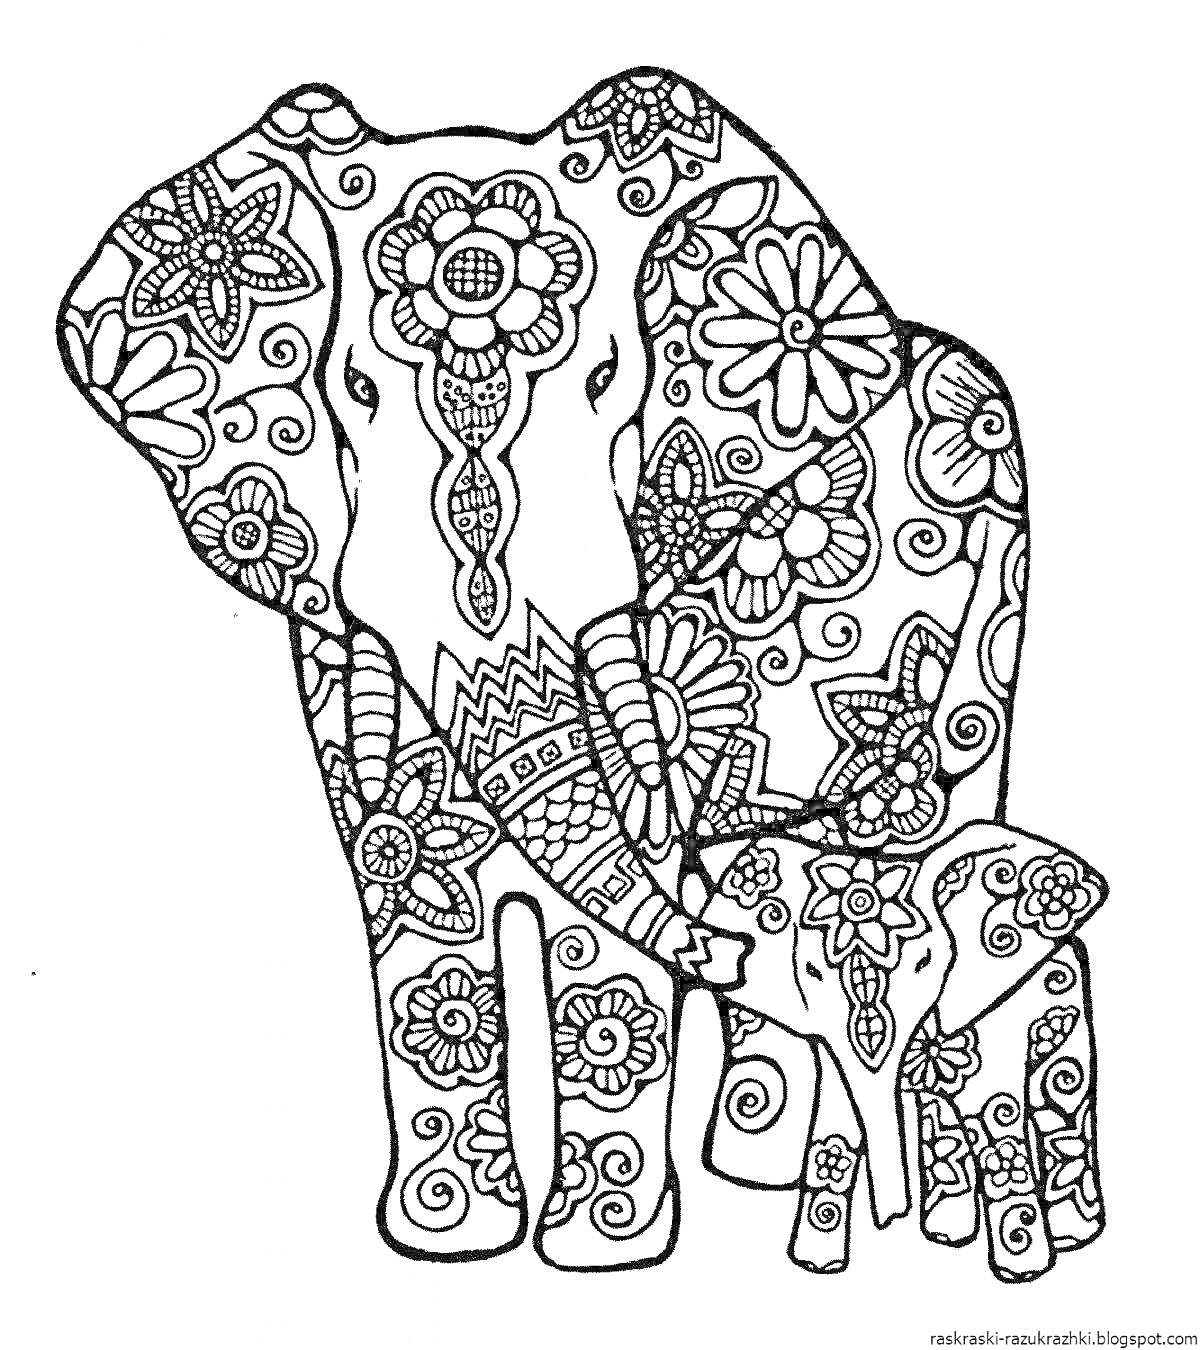 Раскраска Слоны с узорами из цветов и орнаментов